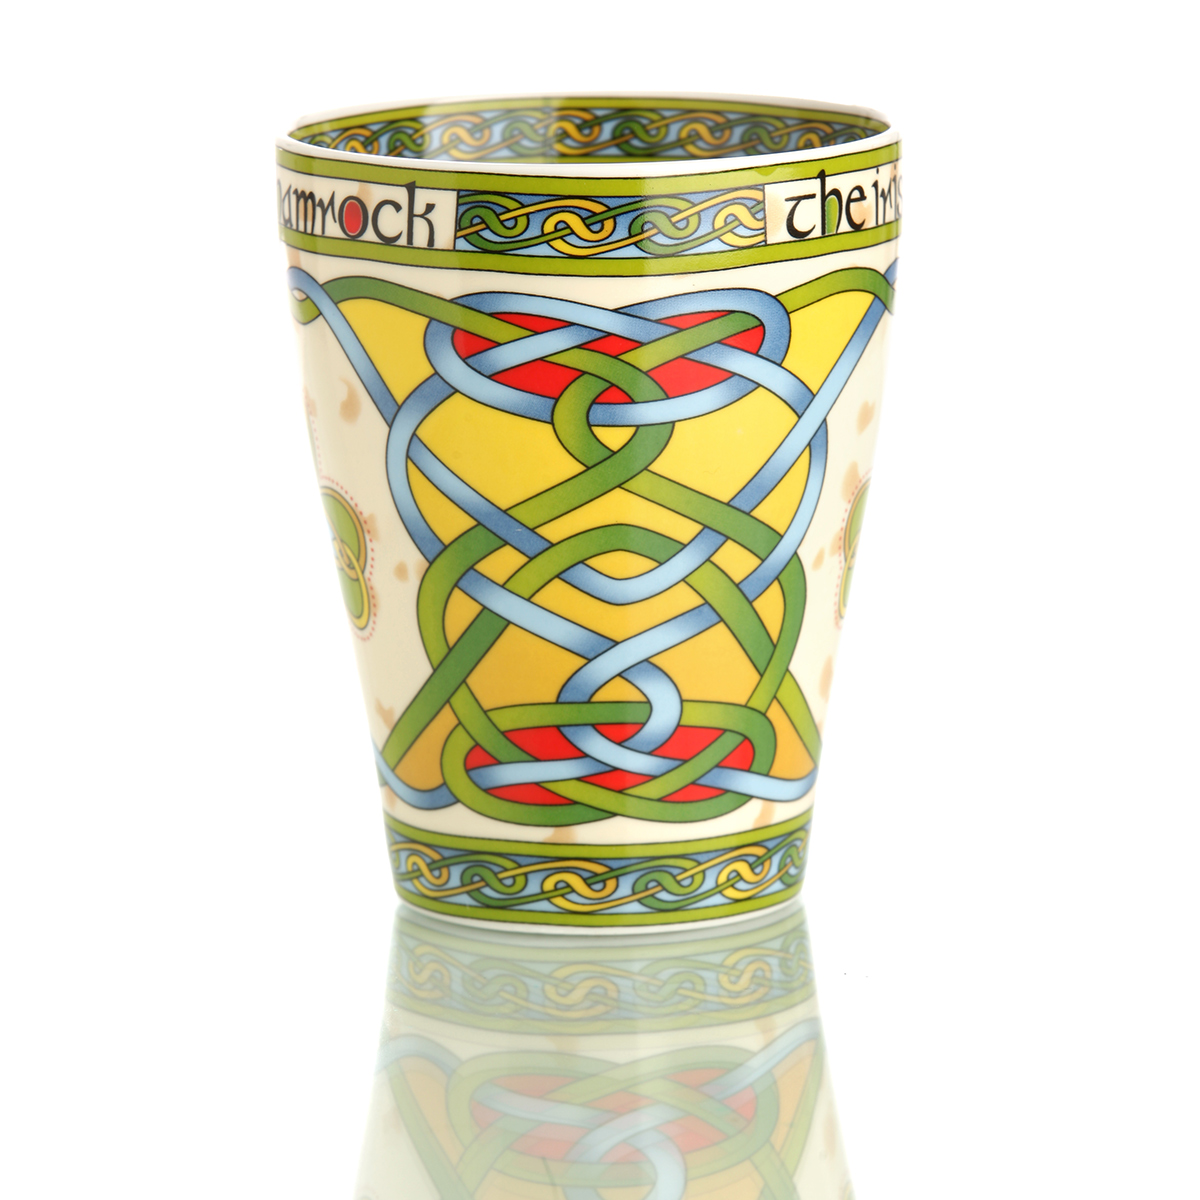 The Irish Shamrock Mug - Kaffeebecher mit irischem Kleeblatt und keltischen Mustern